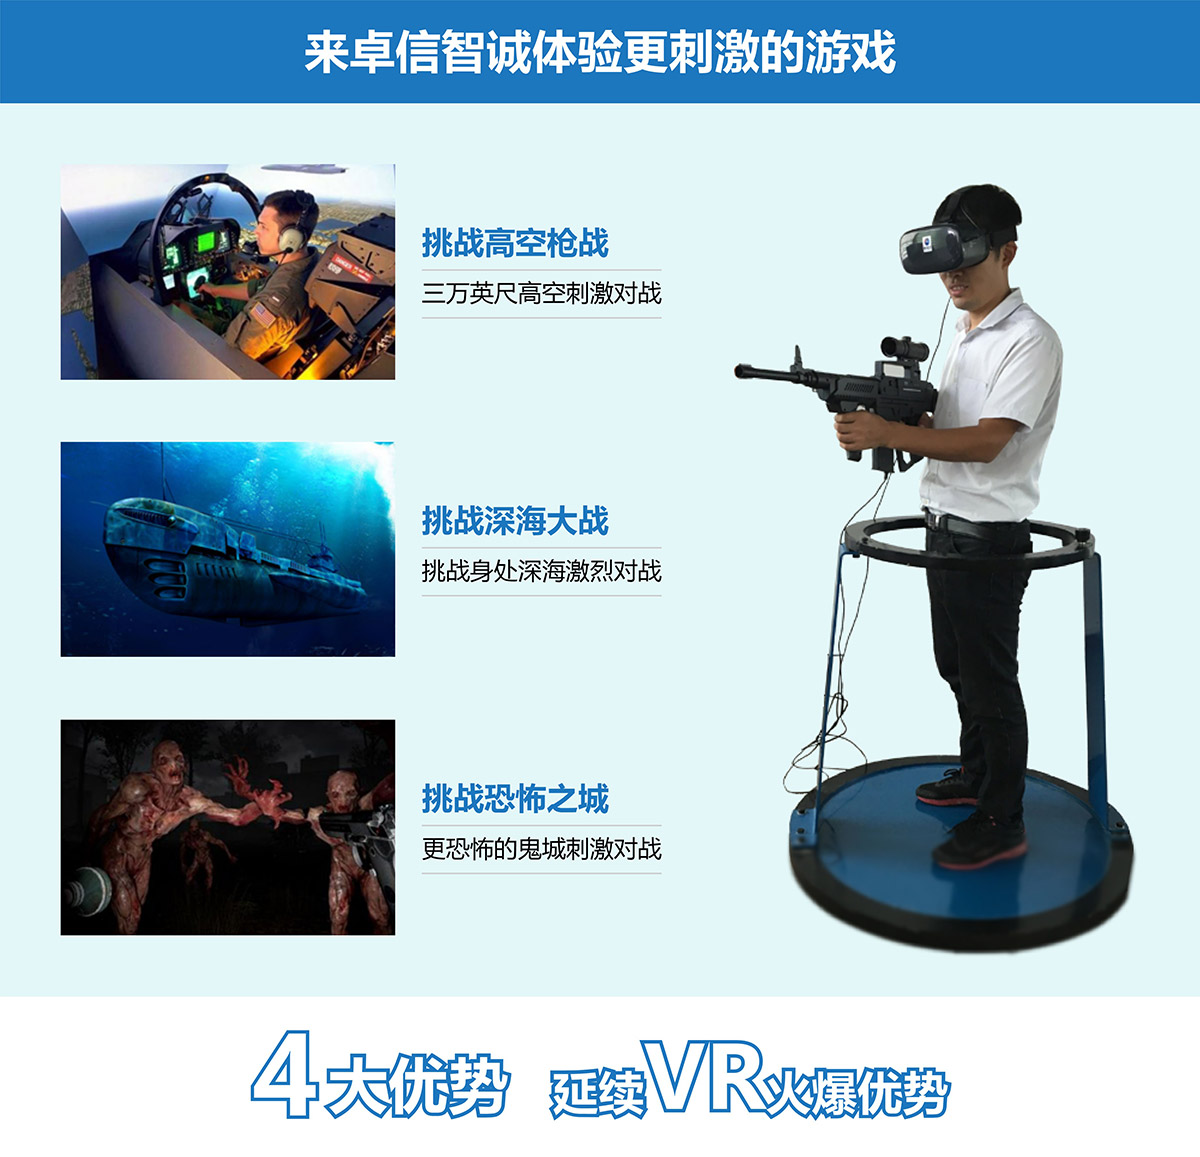 特效电影VR对战4大优势延续vr火爆优势.jpg